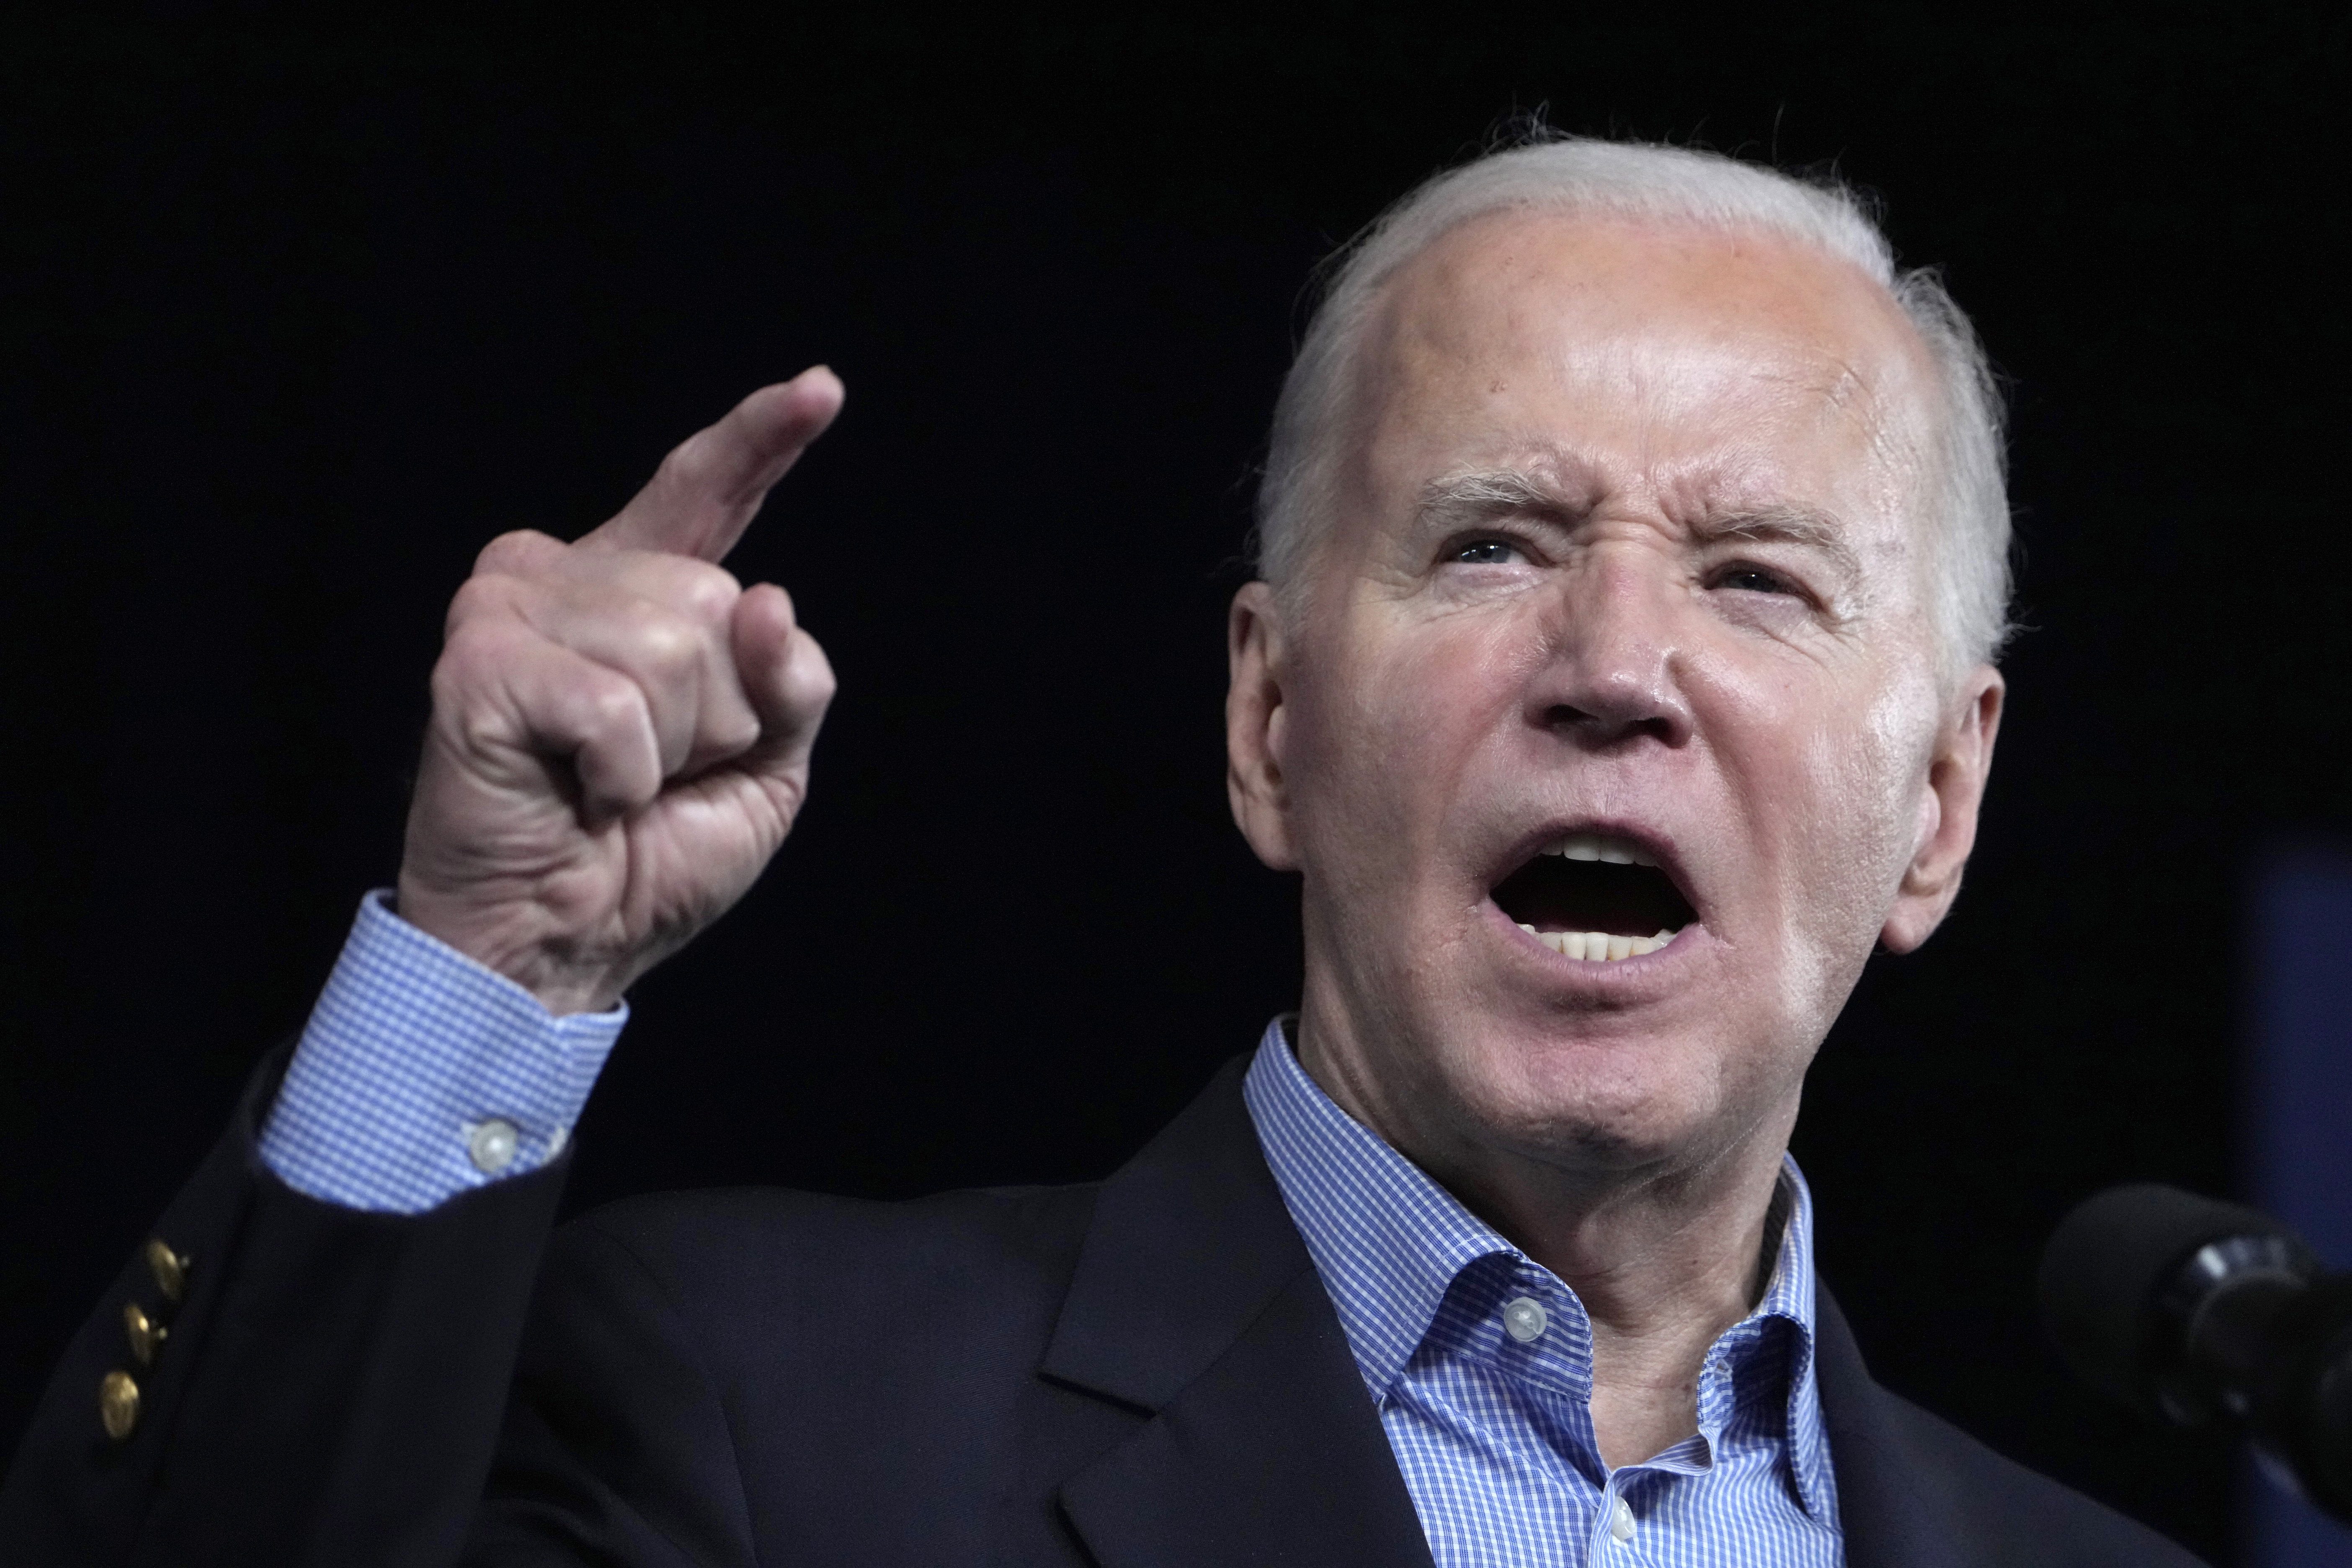 US-Präsident Joe Biden hat Israel aufgefordert, eine Invasion in Rafah zu vermeiden, da dies eine rote Linie überschreiten und unzähligen Zivilisten schaden würde